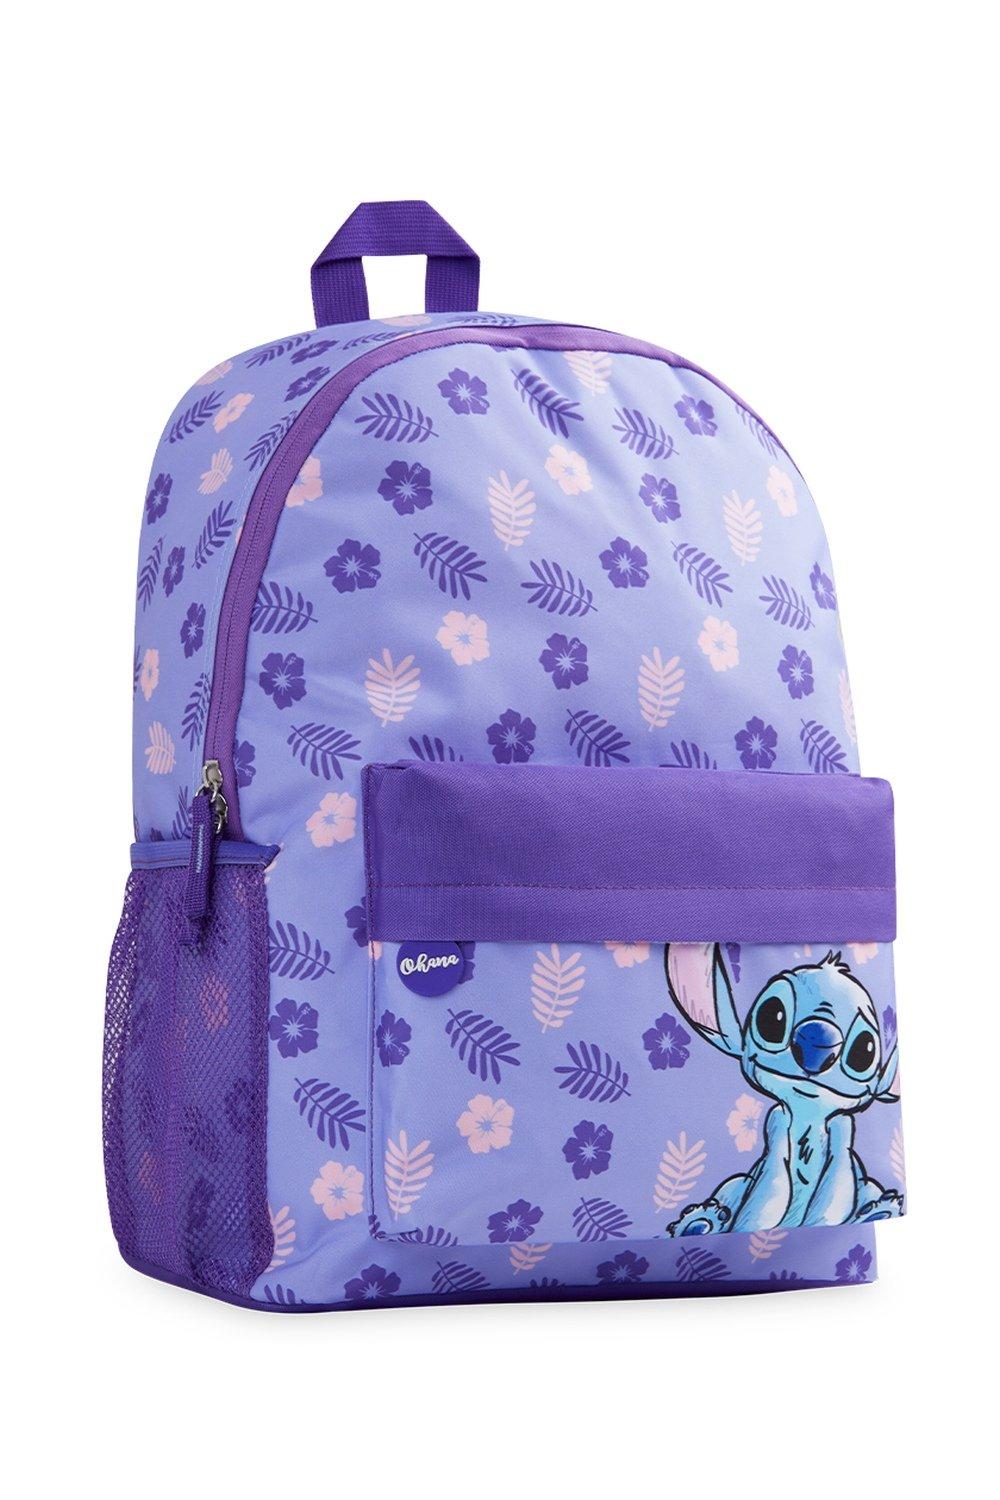 Школьная сумка Лило и Стич Disney, фиолетовый